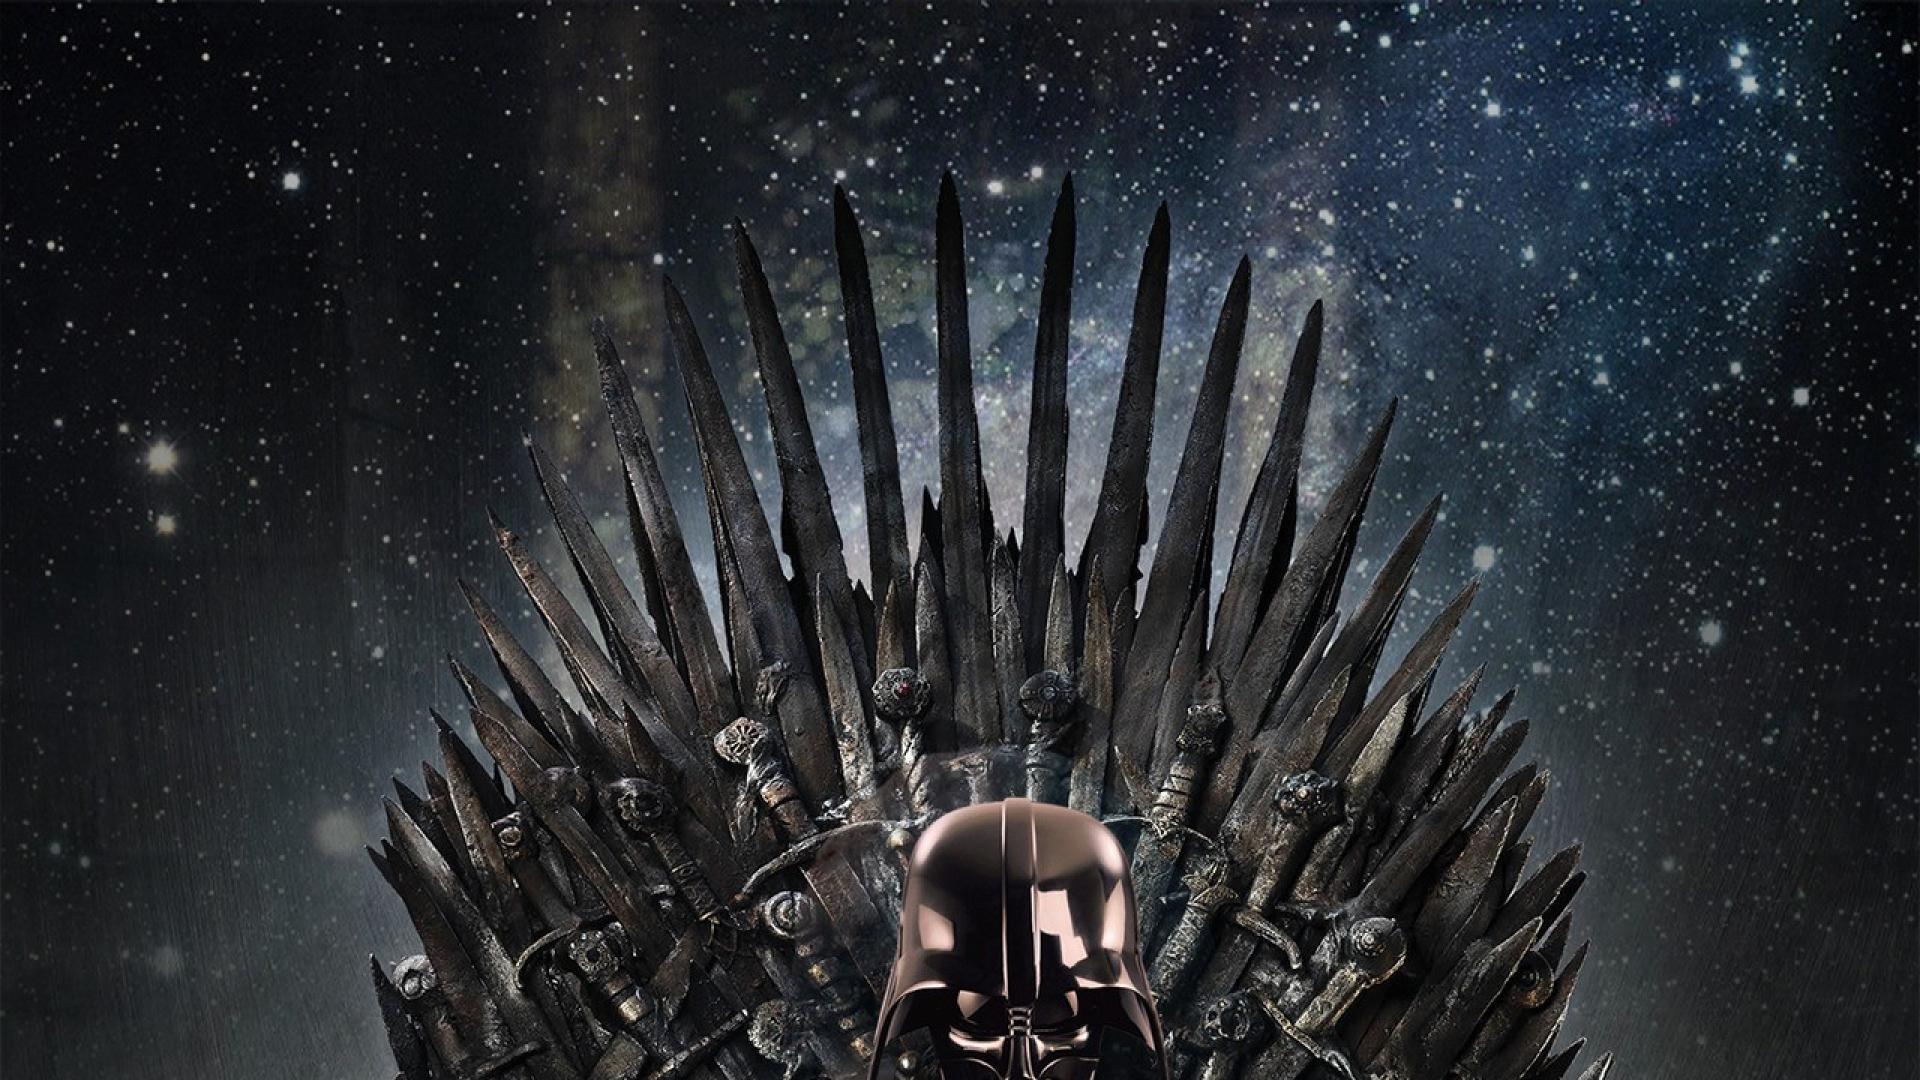 Ghế Iron Throne là biểu tượng về quyền lực và uy quyền nhất trong thế giới Game of Thrones. Dùng hình nền với hình ảnh ghế này là điều tuyệt vời để khiến bạn nhớ lại các đoạn phim kinh điển trong chương trình. Hãy cùng tải hình nền Game of Thrones với ghế Iron Throne để làm mới màn hình của bạn.